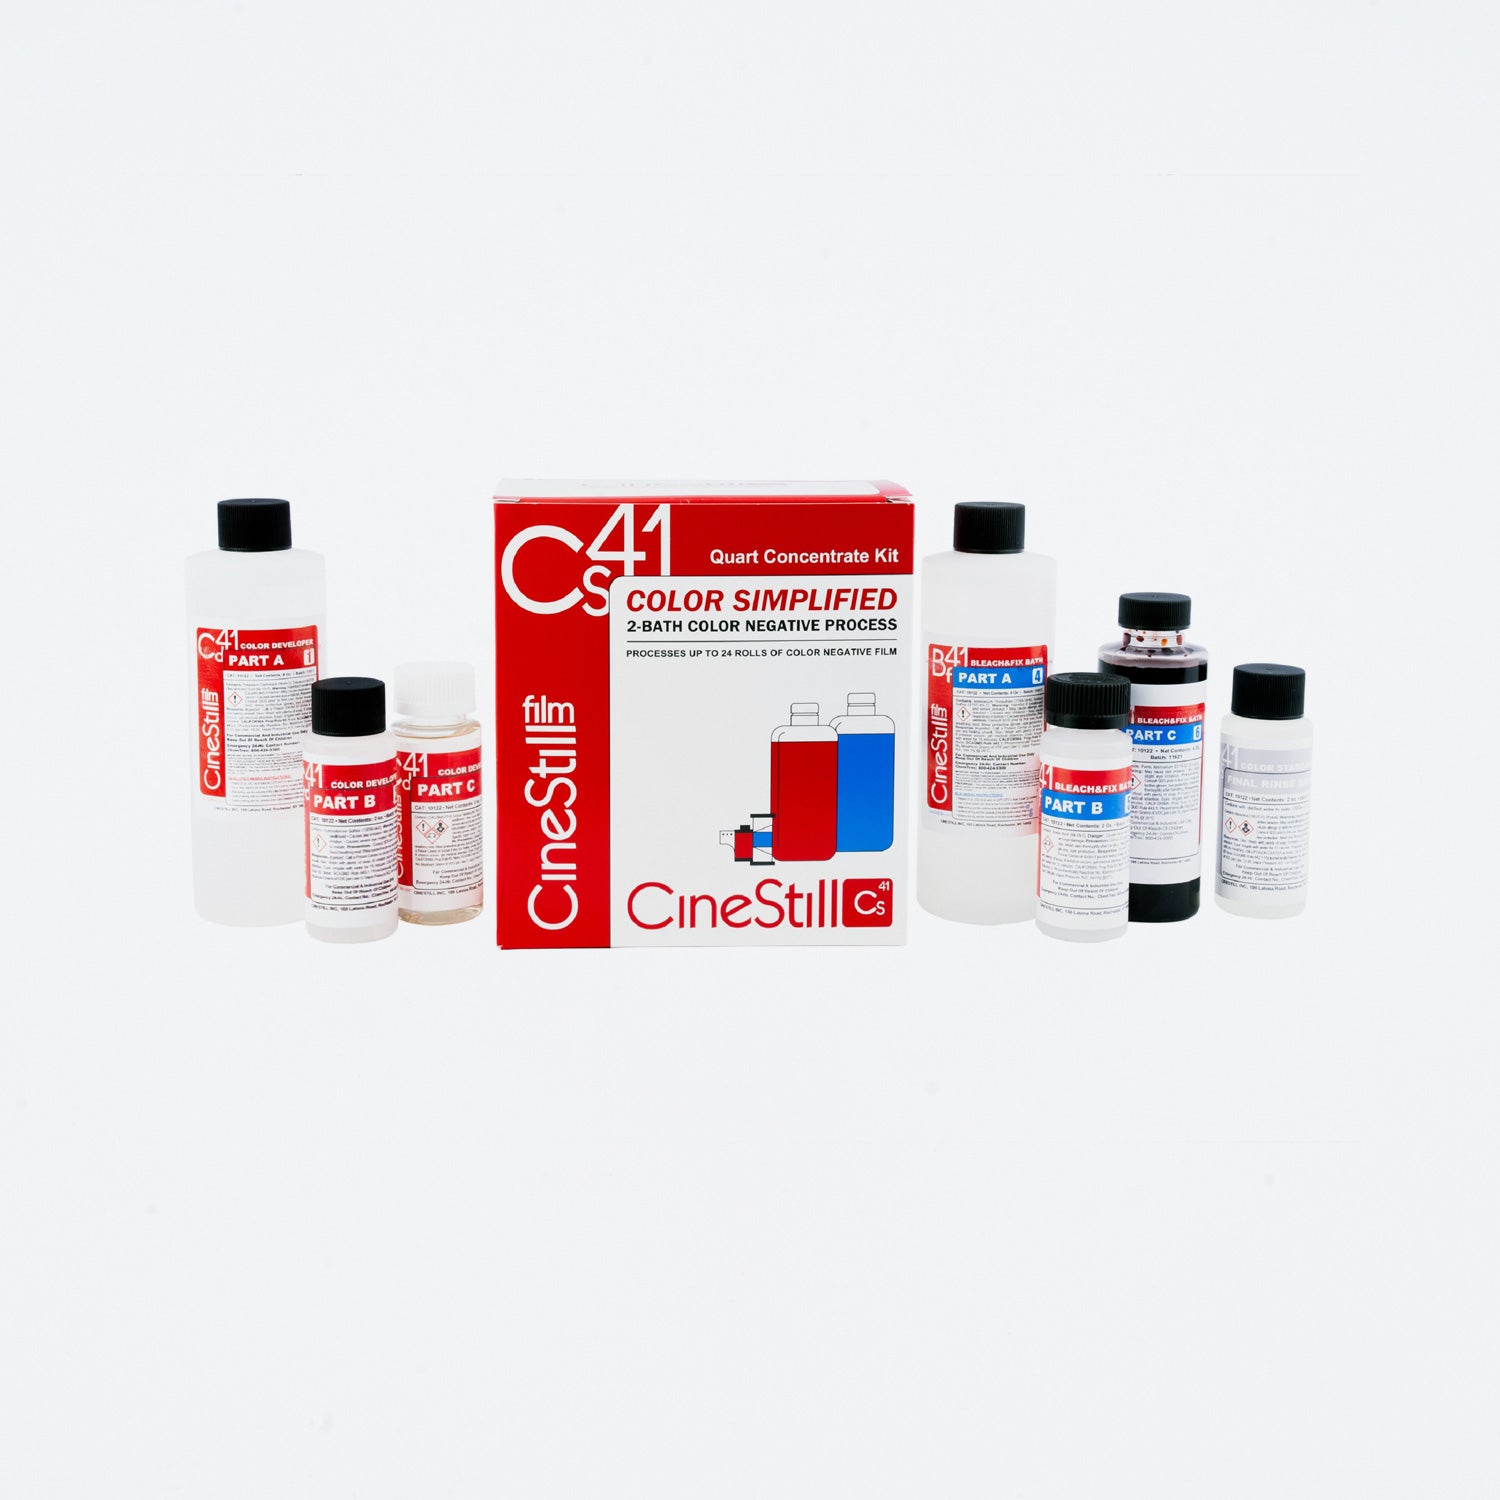 CINESTILL CS41 Color Simplified Quart Kit Pulver für bis zu 24 Filme